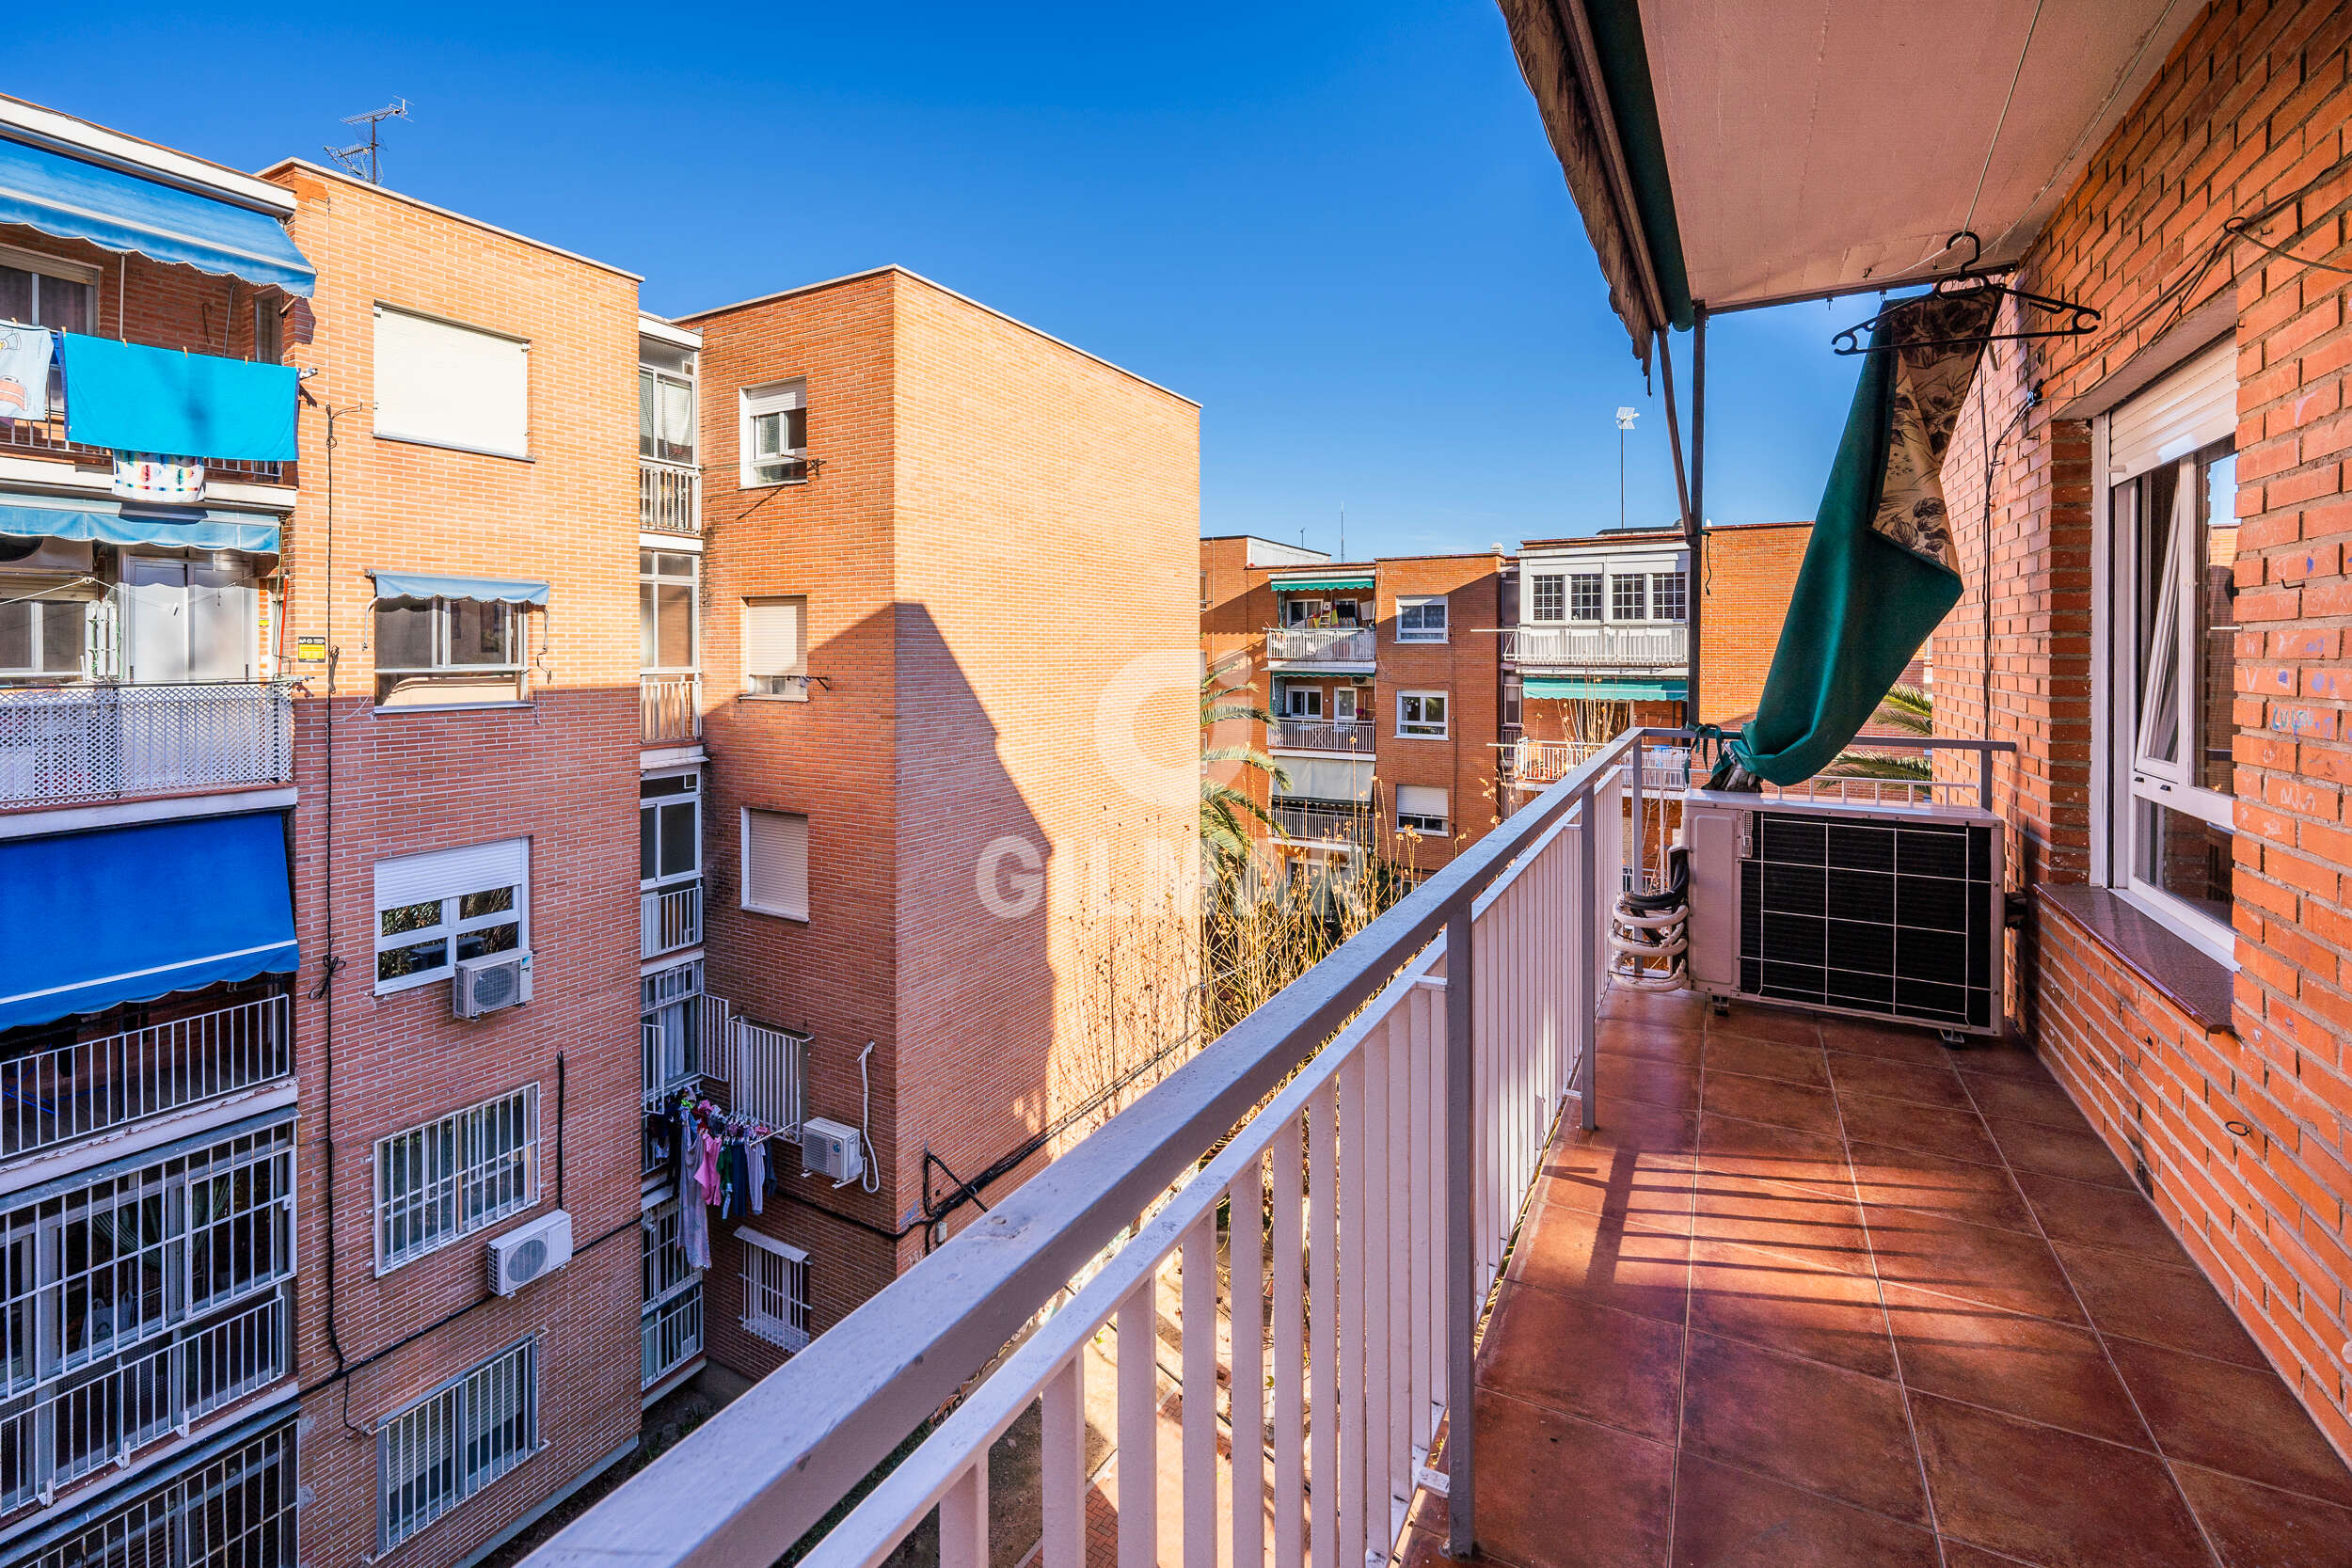 Tienda de Cortinas para dormitorio en Alcobendas, Madrid